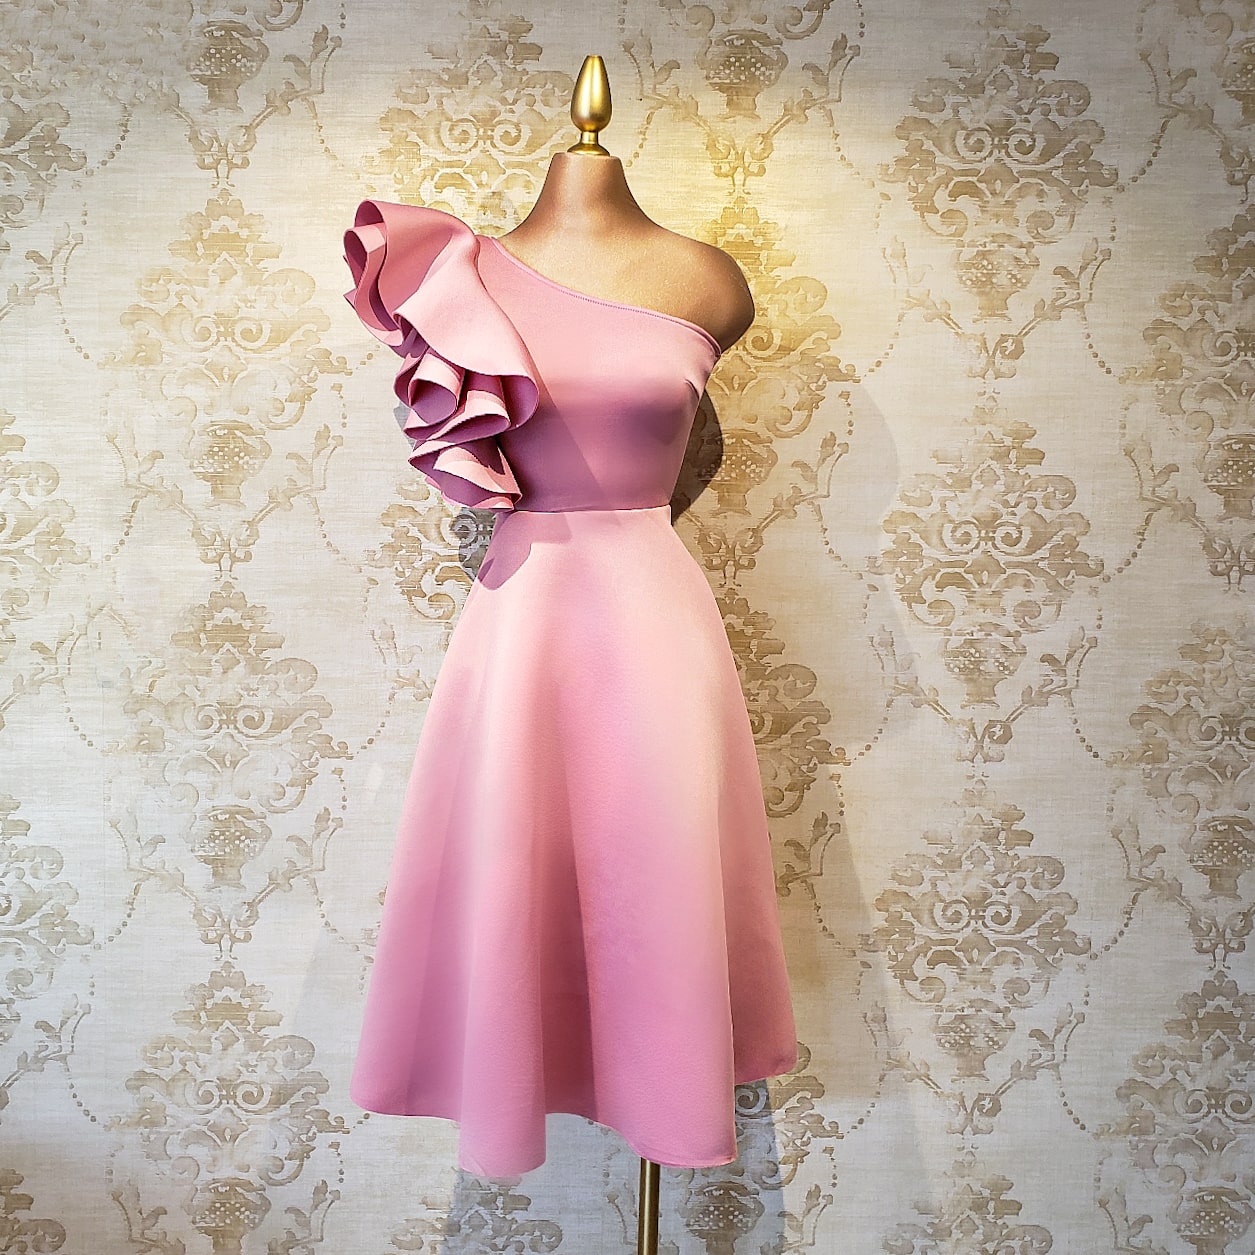 Vestido Rosa Corto Ajustado Elegante 1 Hombro - Almudena Boutique - Ropa  para mujer, Vestidos cortos, de noche y para novias